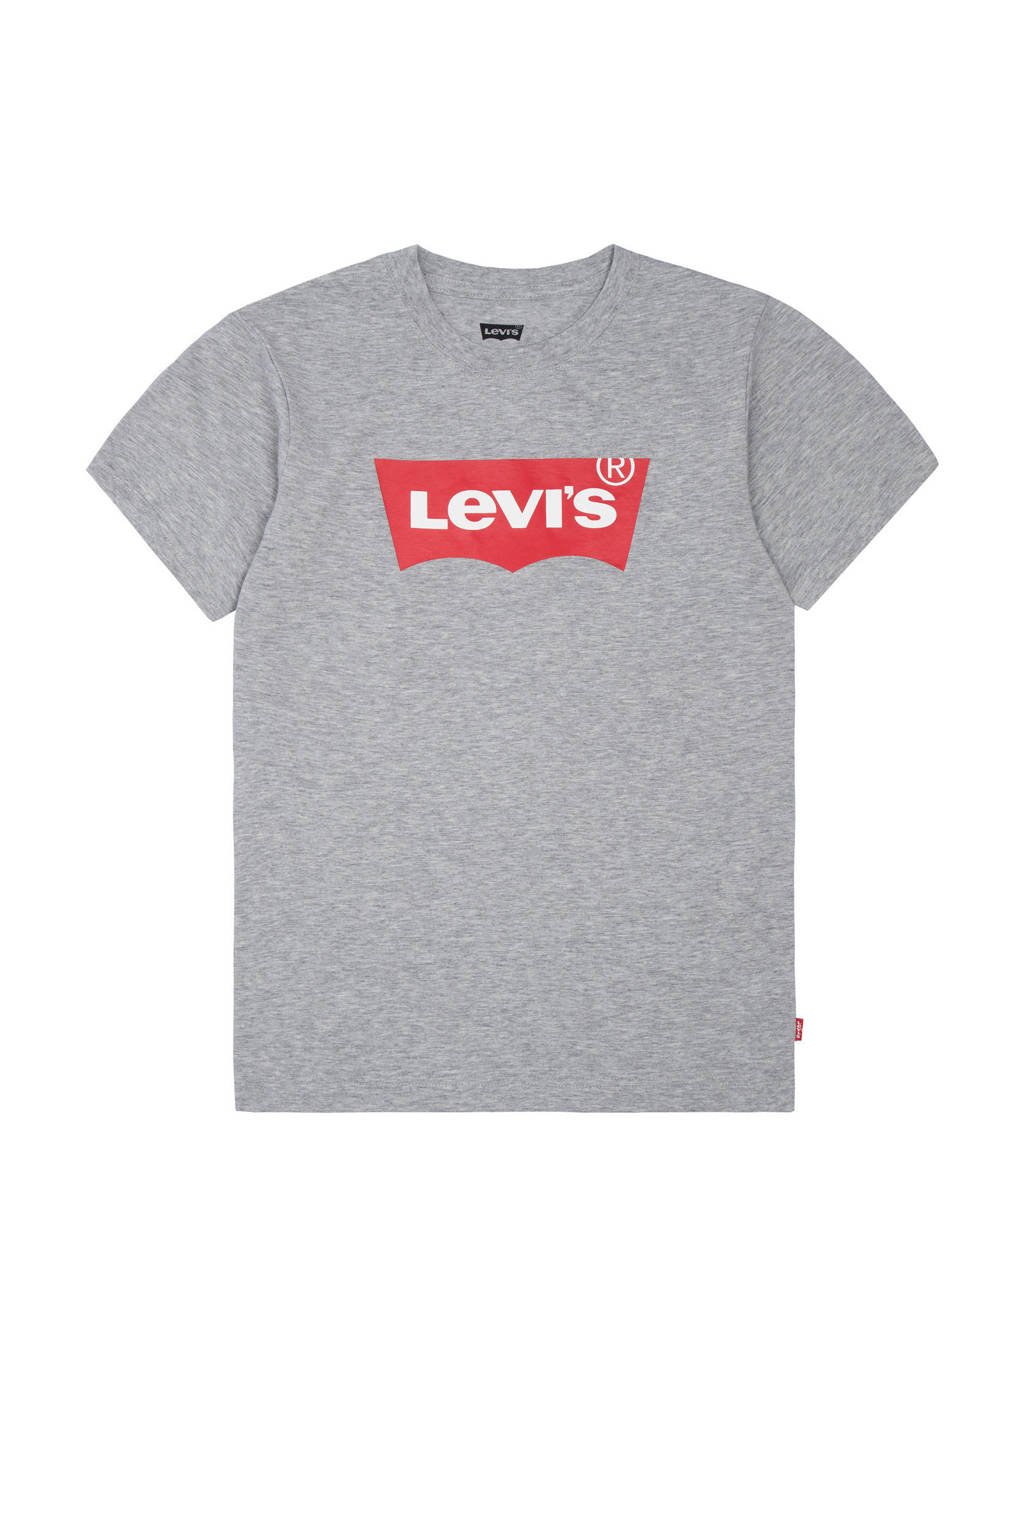 Grijs melange jongens Levi's Kids T-shirt Batwing melange van katoen met logo dessin, korte mouwen en ronde hals